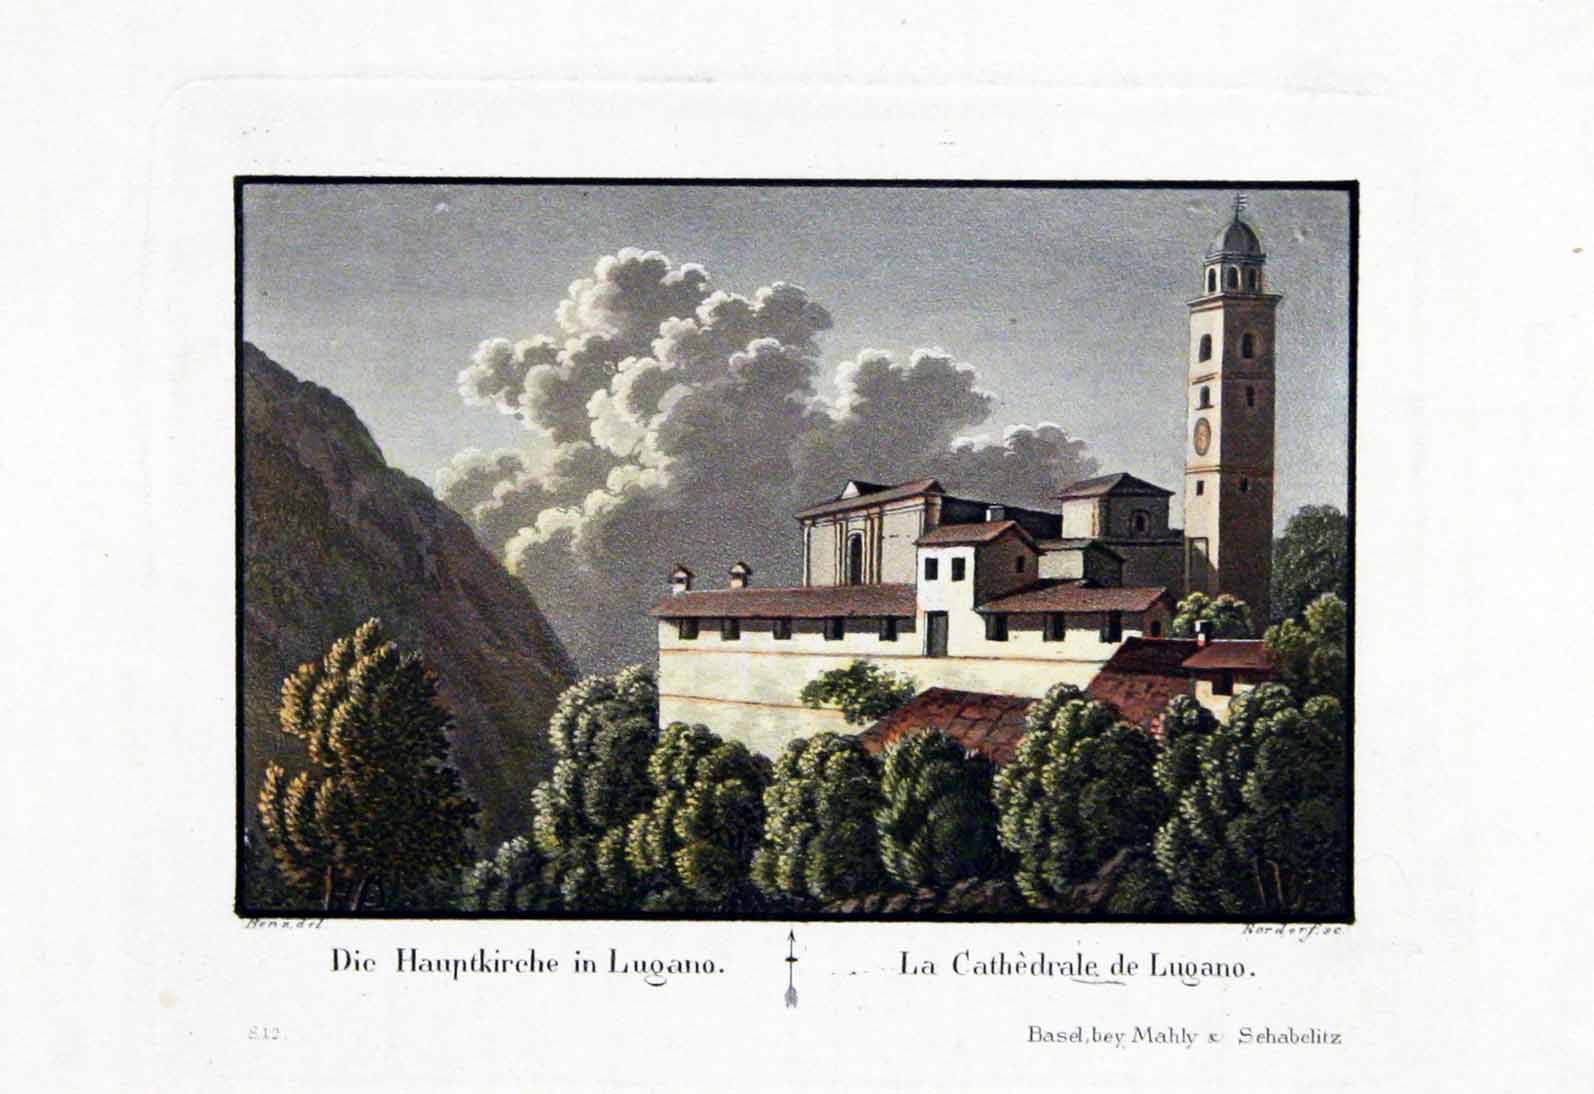 RORDORF, sc. d'aprs Benz del: - Die Hauptkirche in Lugano / La Cathdrale de Lugano.